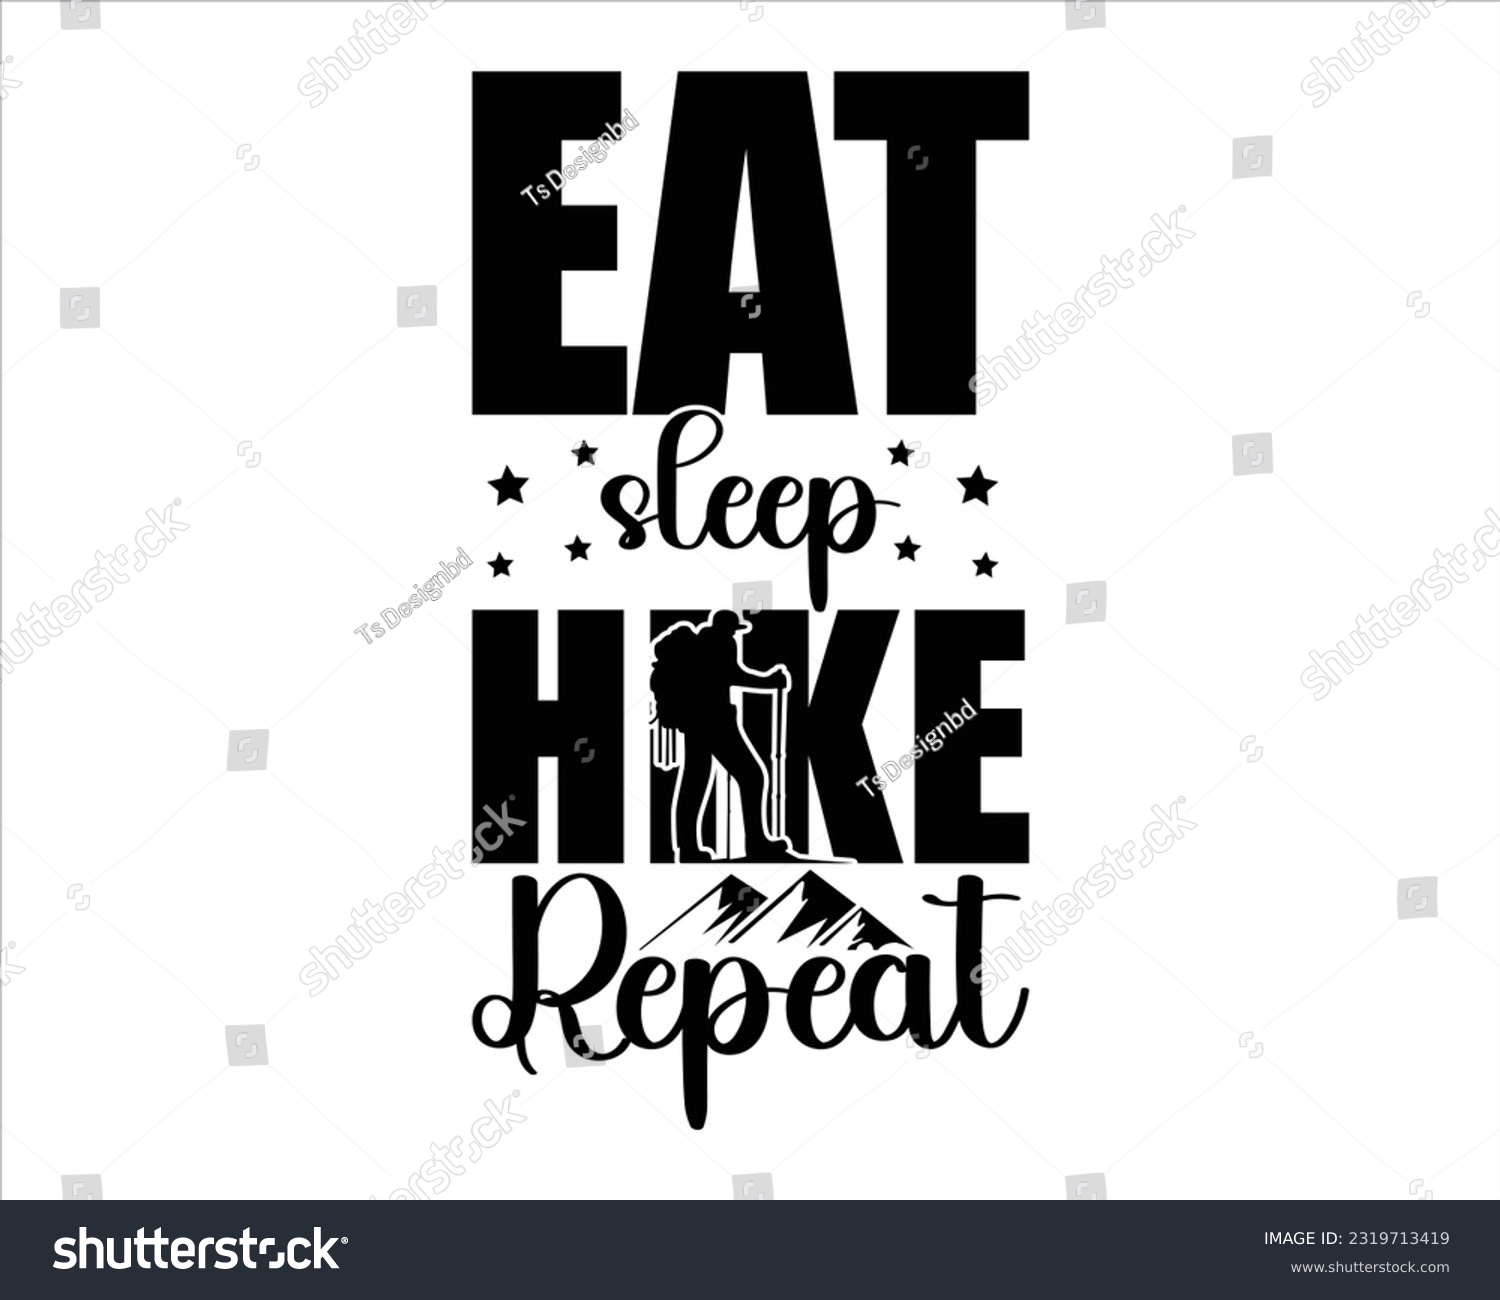 SVG of Eat  Sleep Hike Repeat Svg Design, Hiking Svg Design, Mountain illustration, outdoor adventure ,Outdoor Adventure Inspiring Motivation Quote, camping, hiking svg